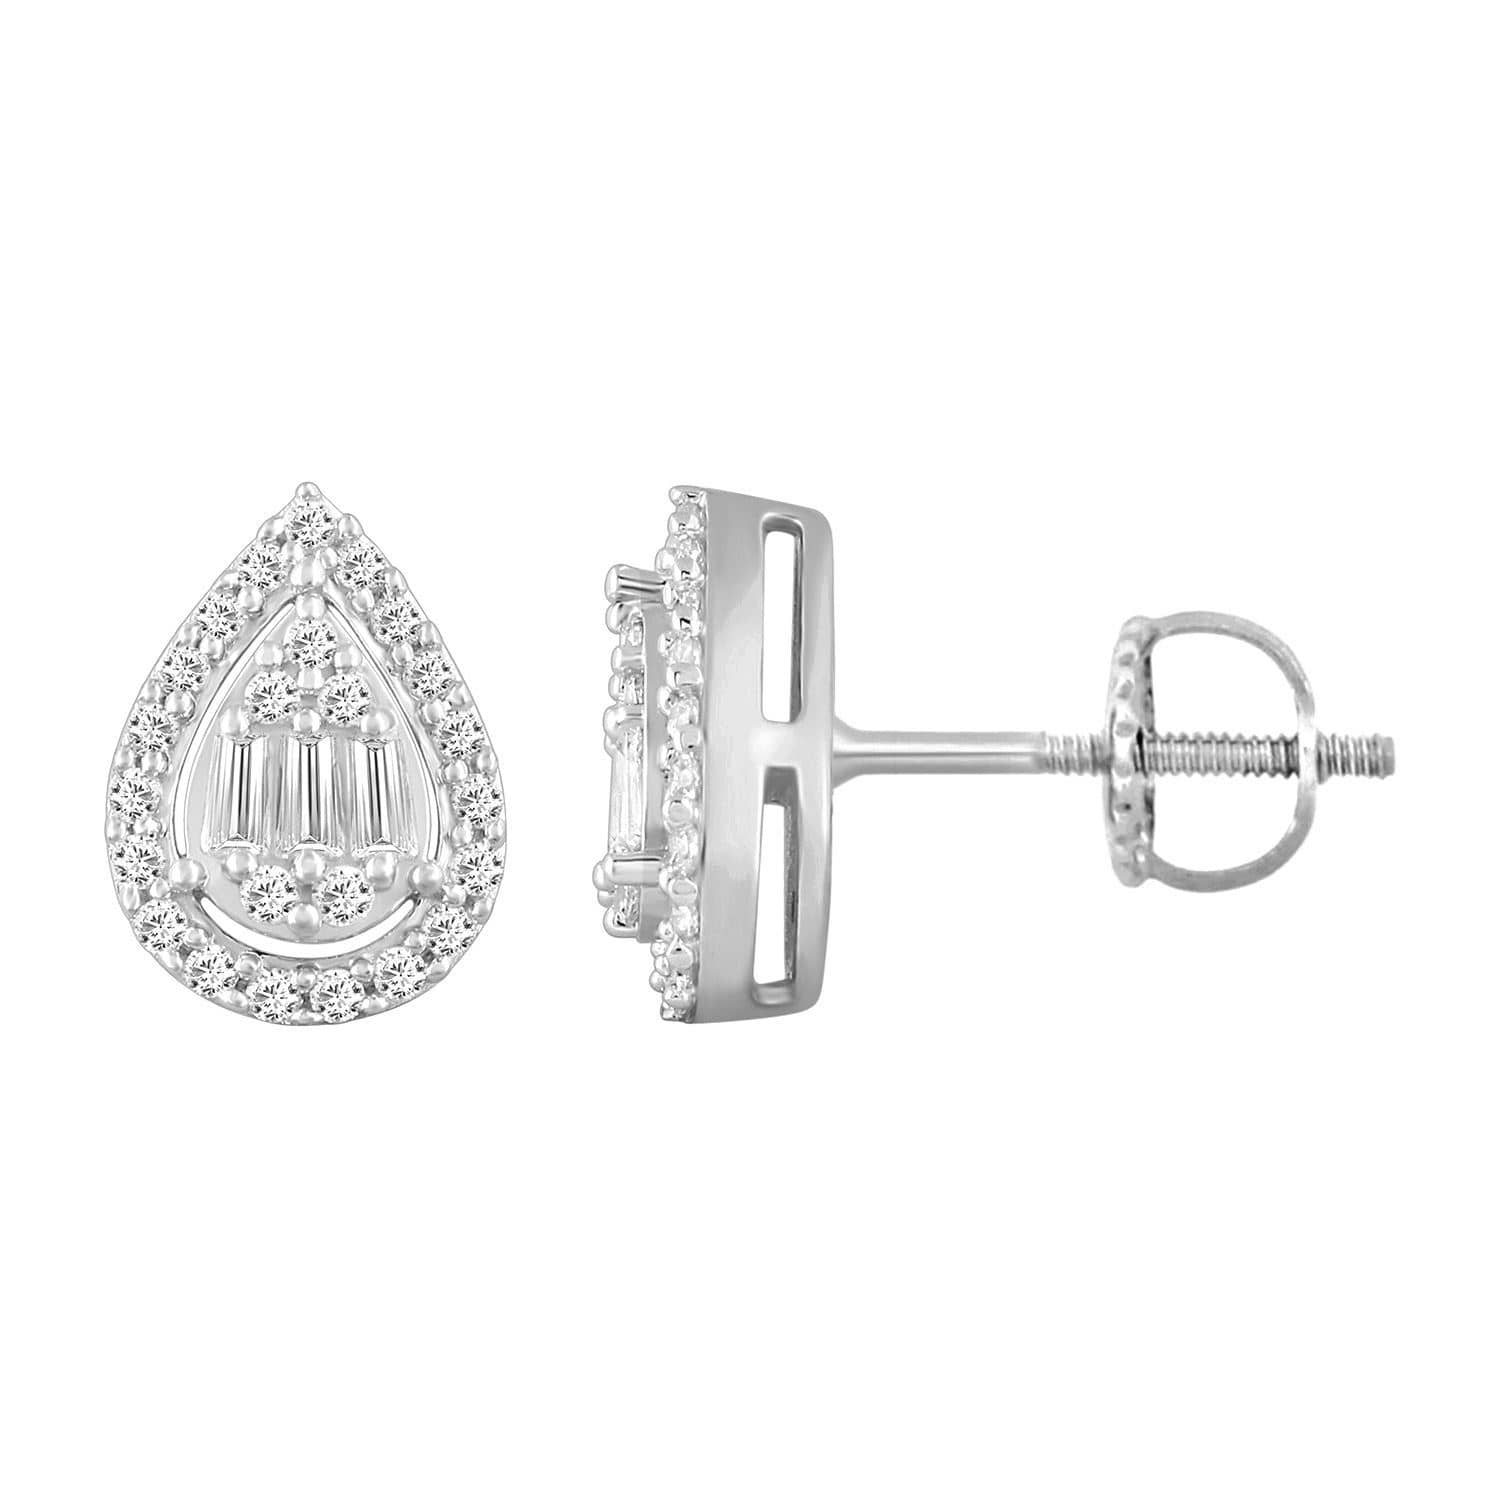 0018443_unisex-earrings-13-ct-roundbaguette-diamond-10k-white-gold.jpeg